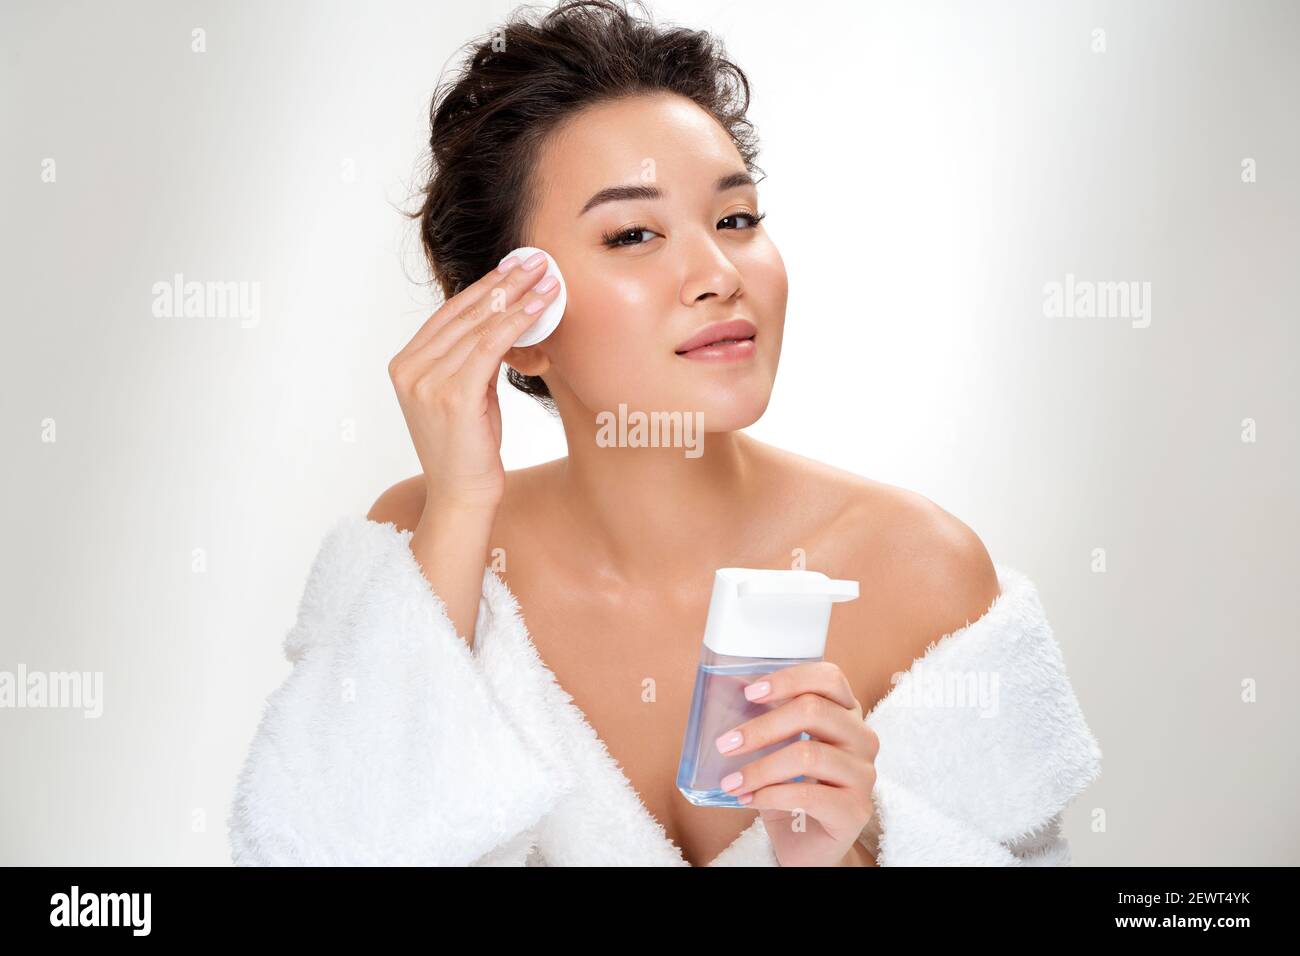 Frau, die Make-up entfernt, hält Wattepads nahe dem Gesicht. Foto von asiatischen Frau mit perfekter Haut auf weißem Hintergrund. Beauty und Hautpflege Konzept Stockfoto